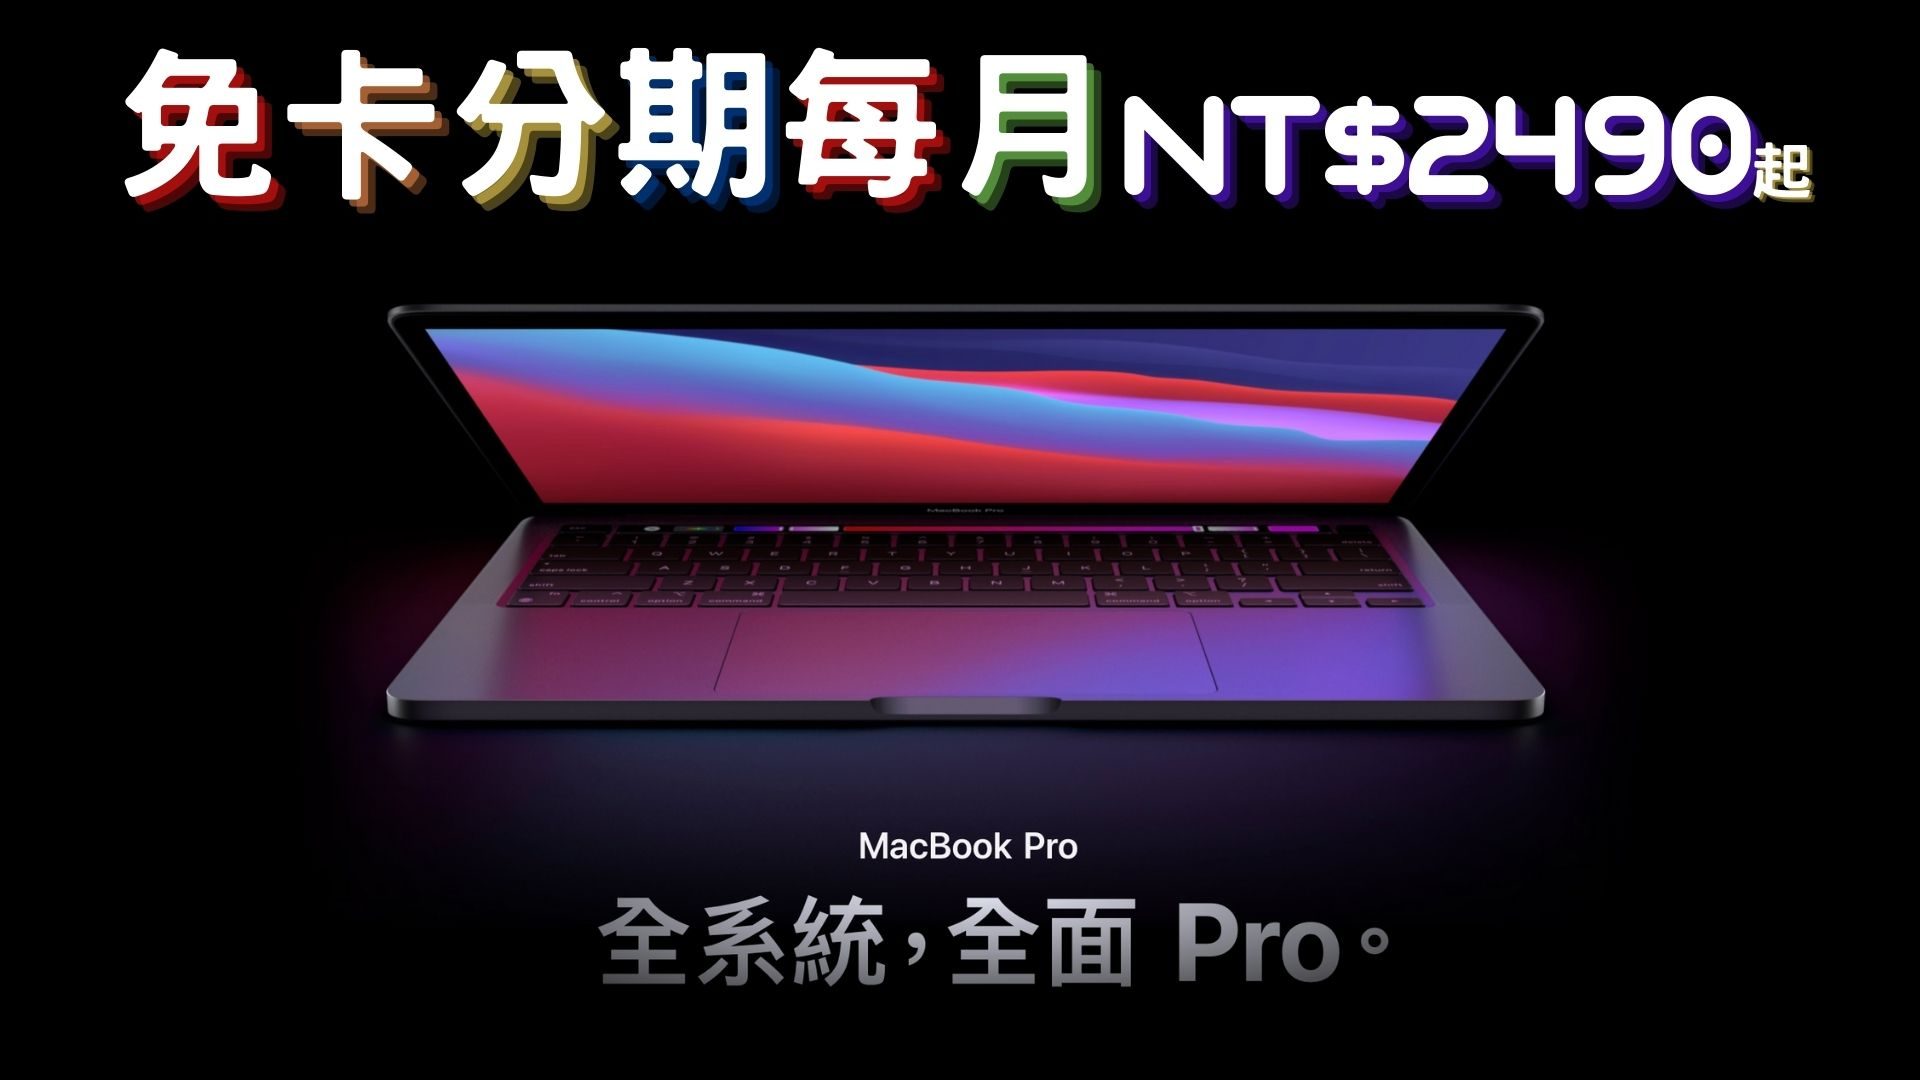 macbook pro 免卡分期